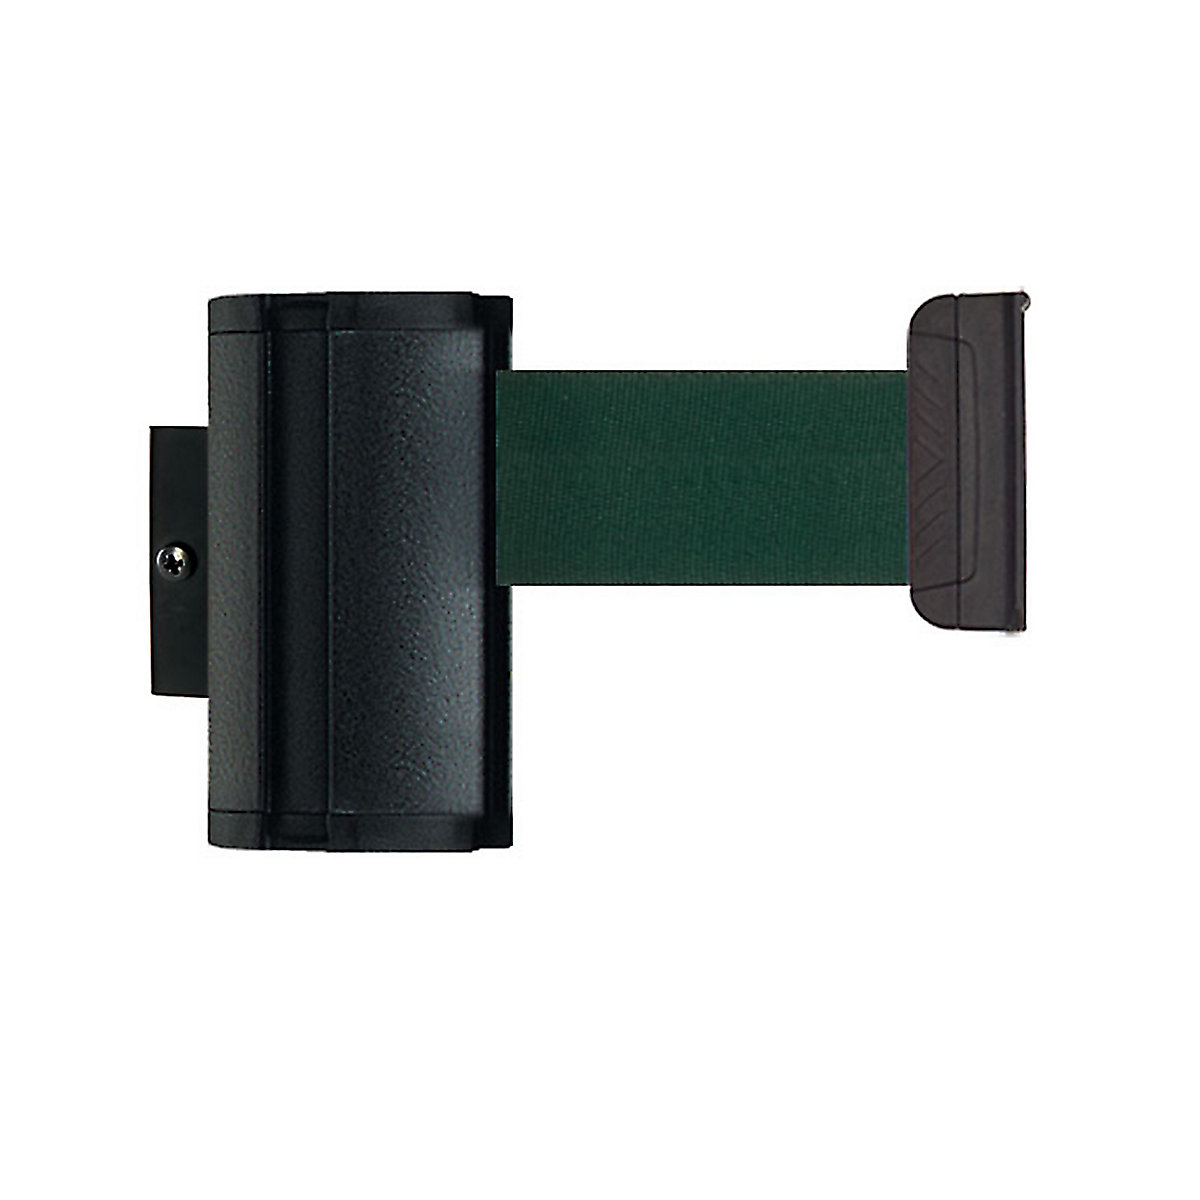 Cassetta per nastro Wall Mount, estrazione nastro max 3700 mm, nastro verde-3